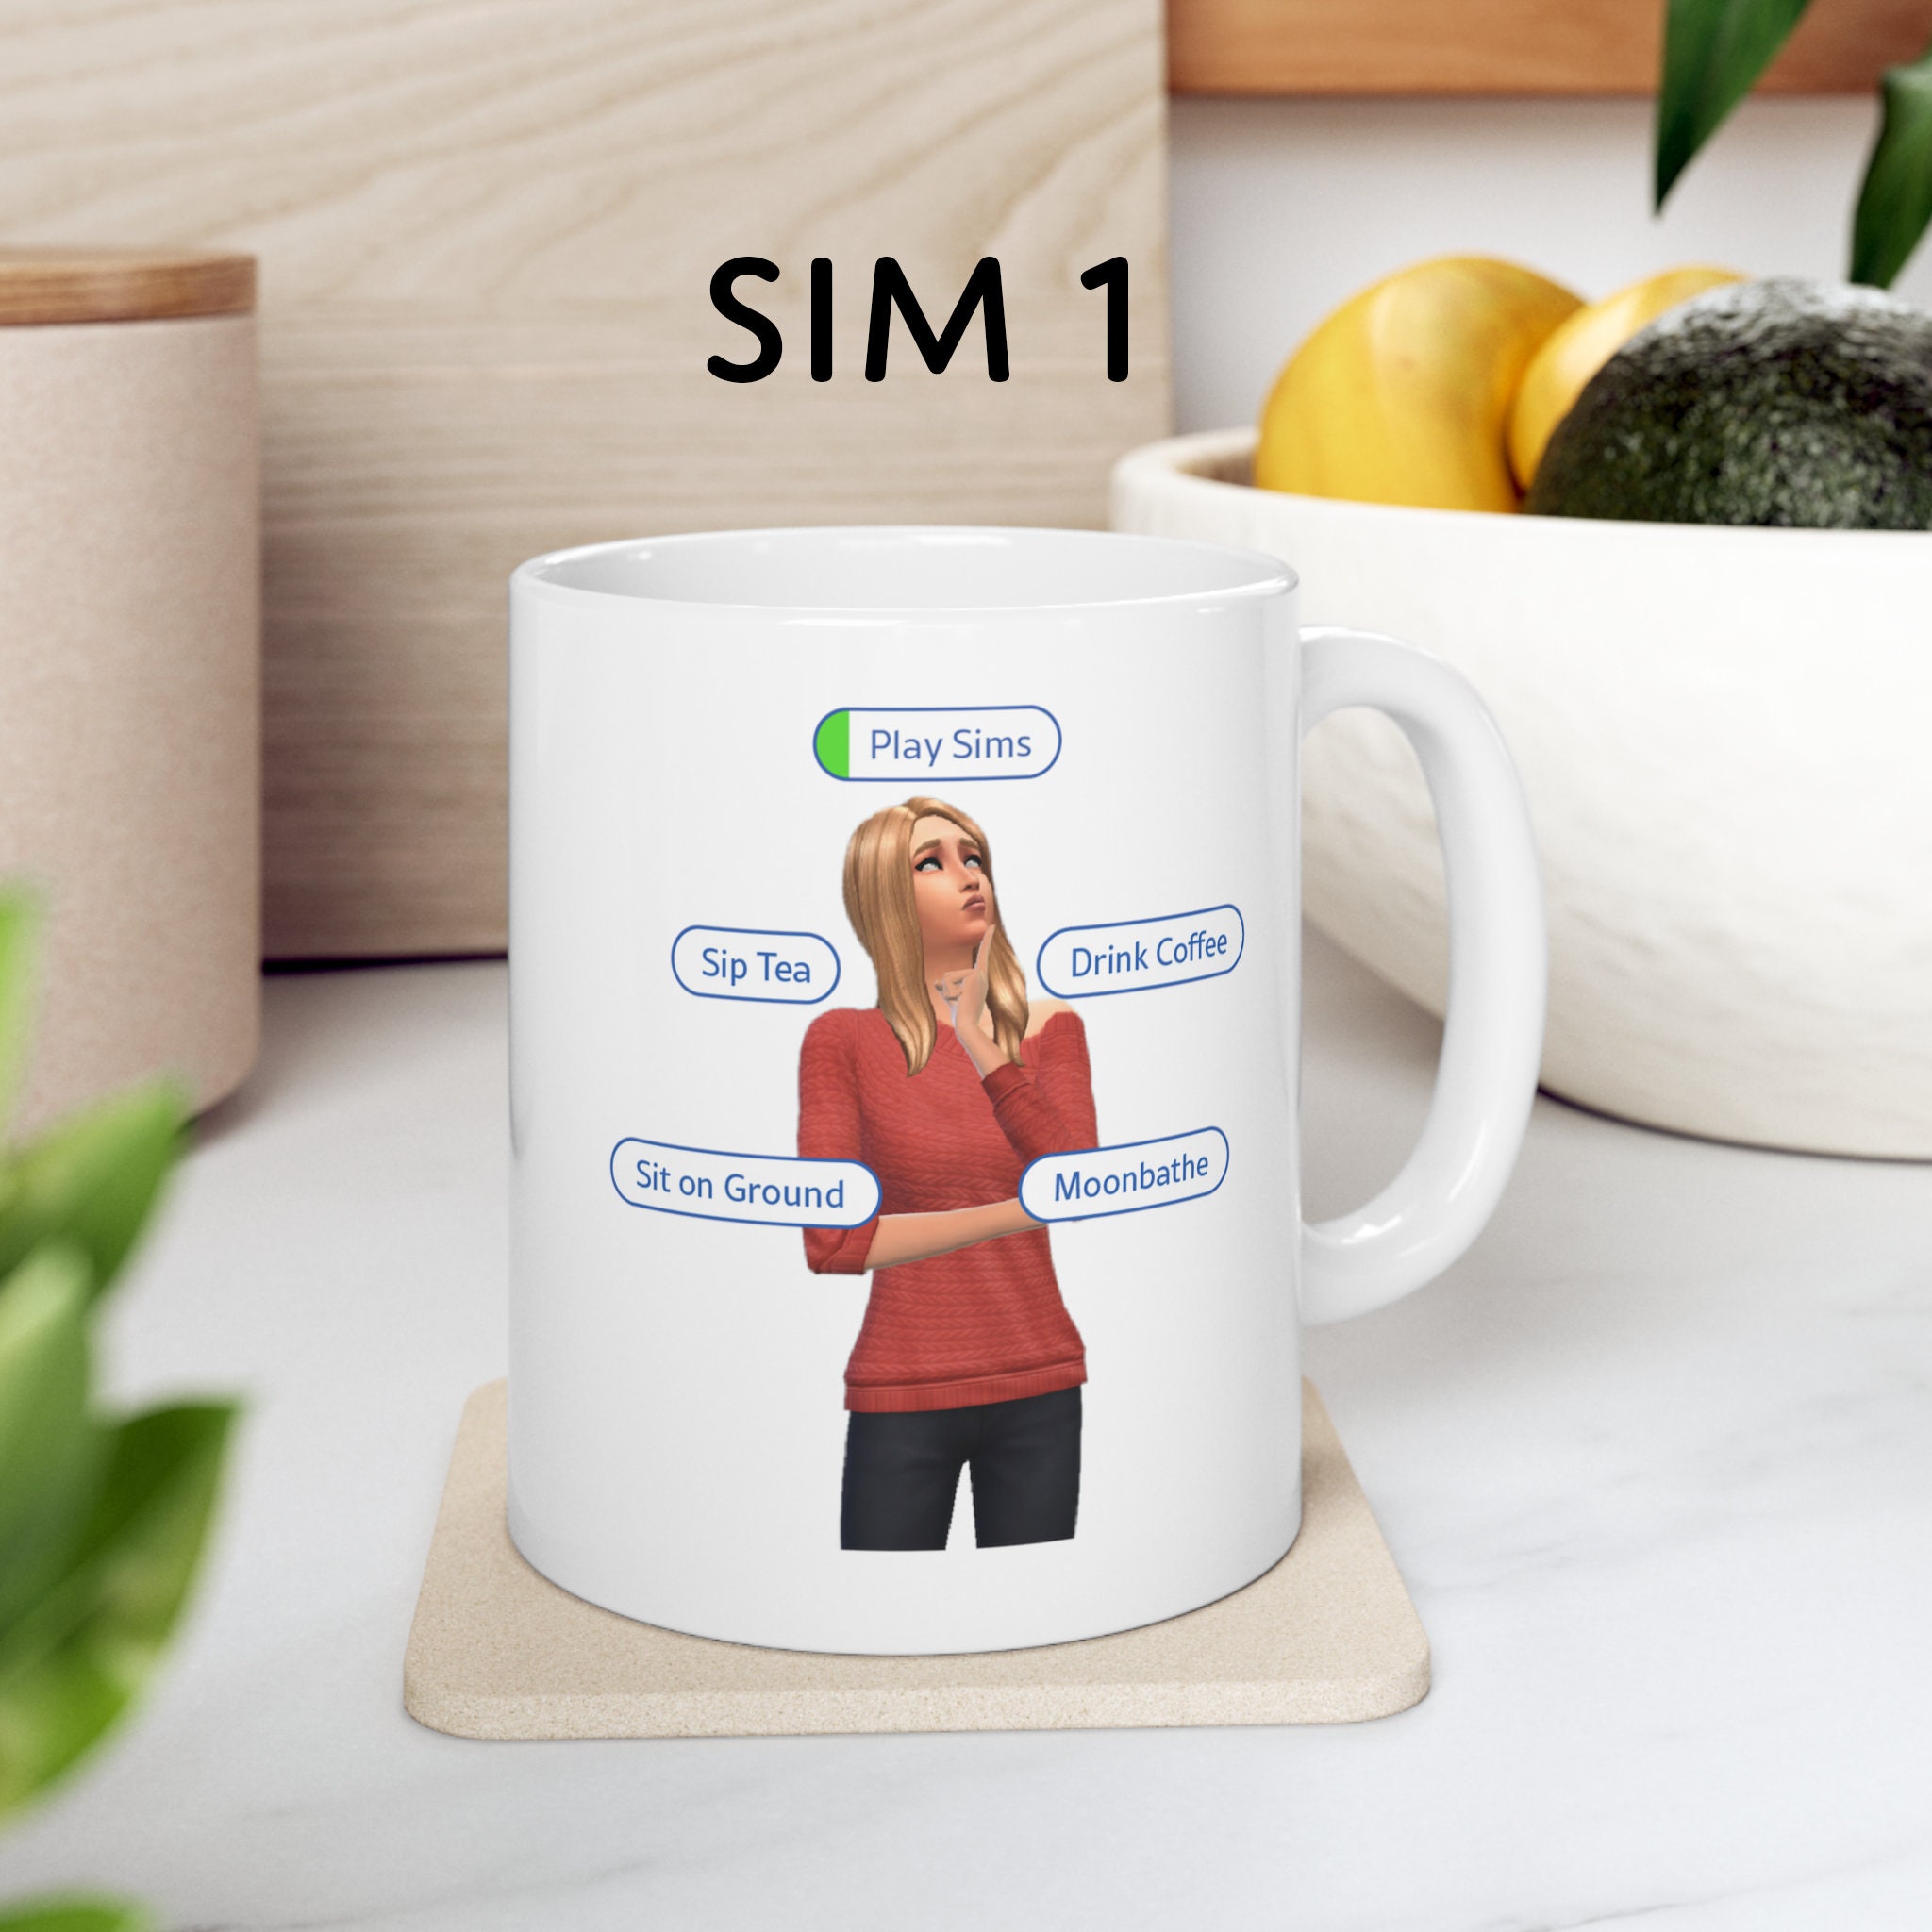 Sims mug in blushing pink ◊😚◊ ⋄ ⋄ ⋄ ⋄ ⋄ ⋄ ⋄ ⋄ ⋄ #sims4